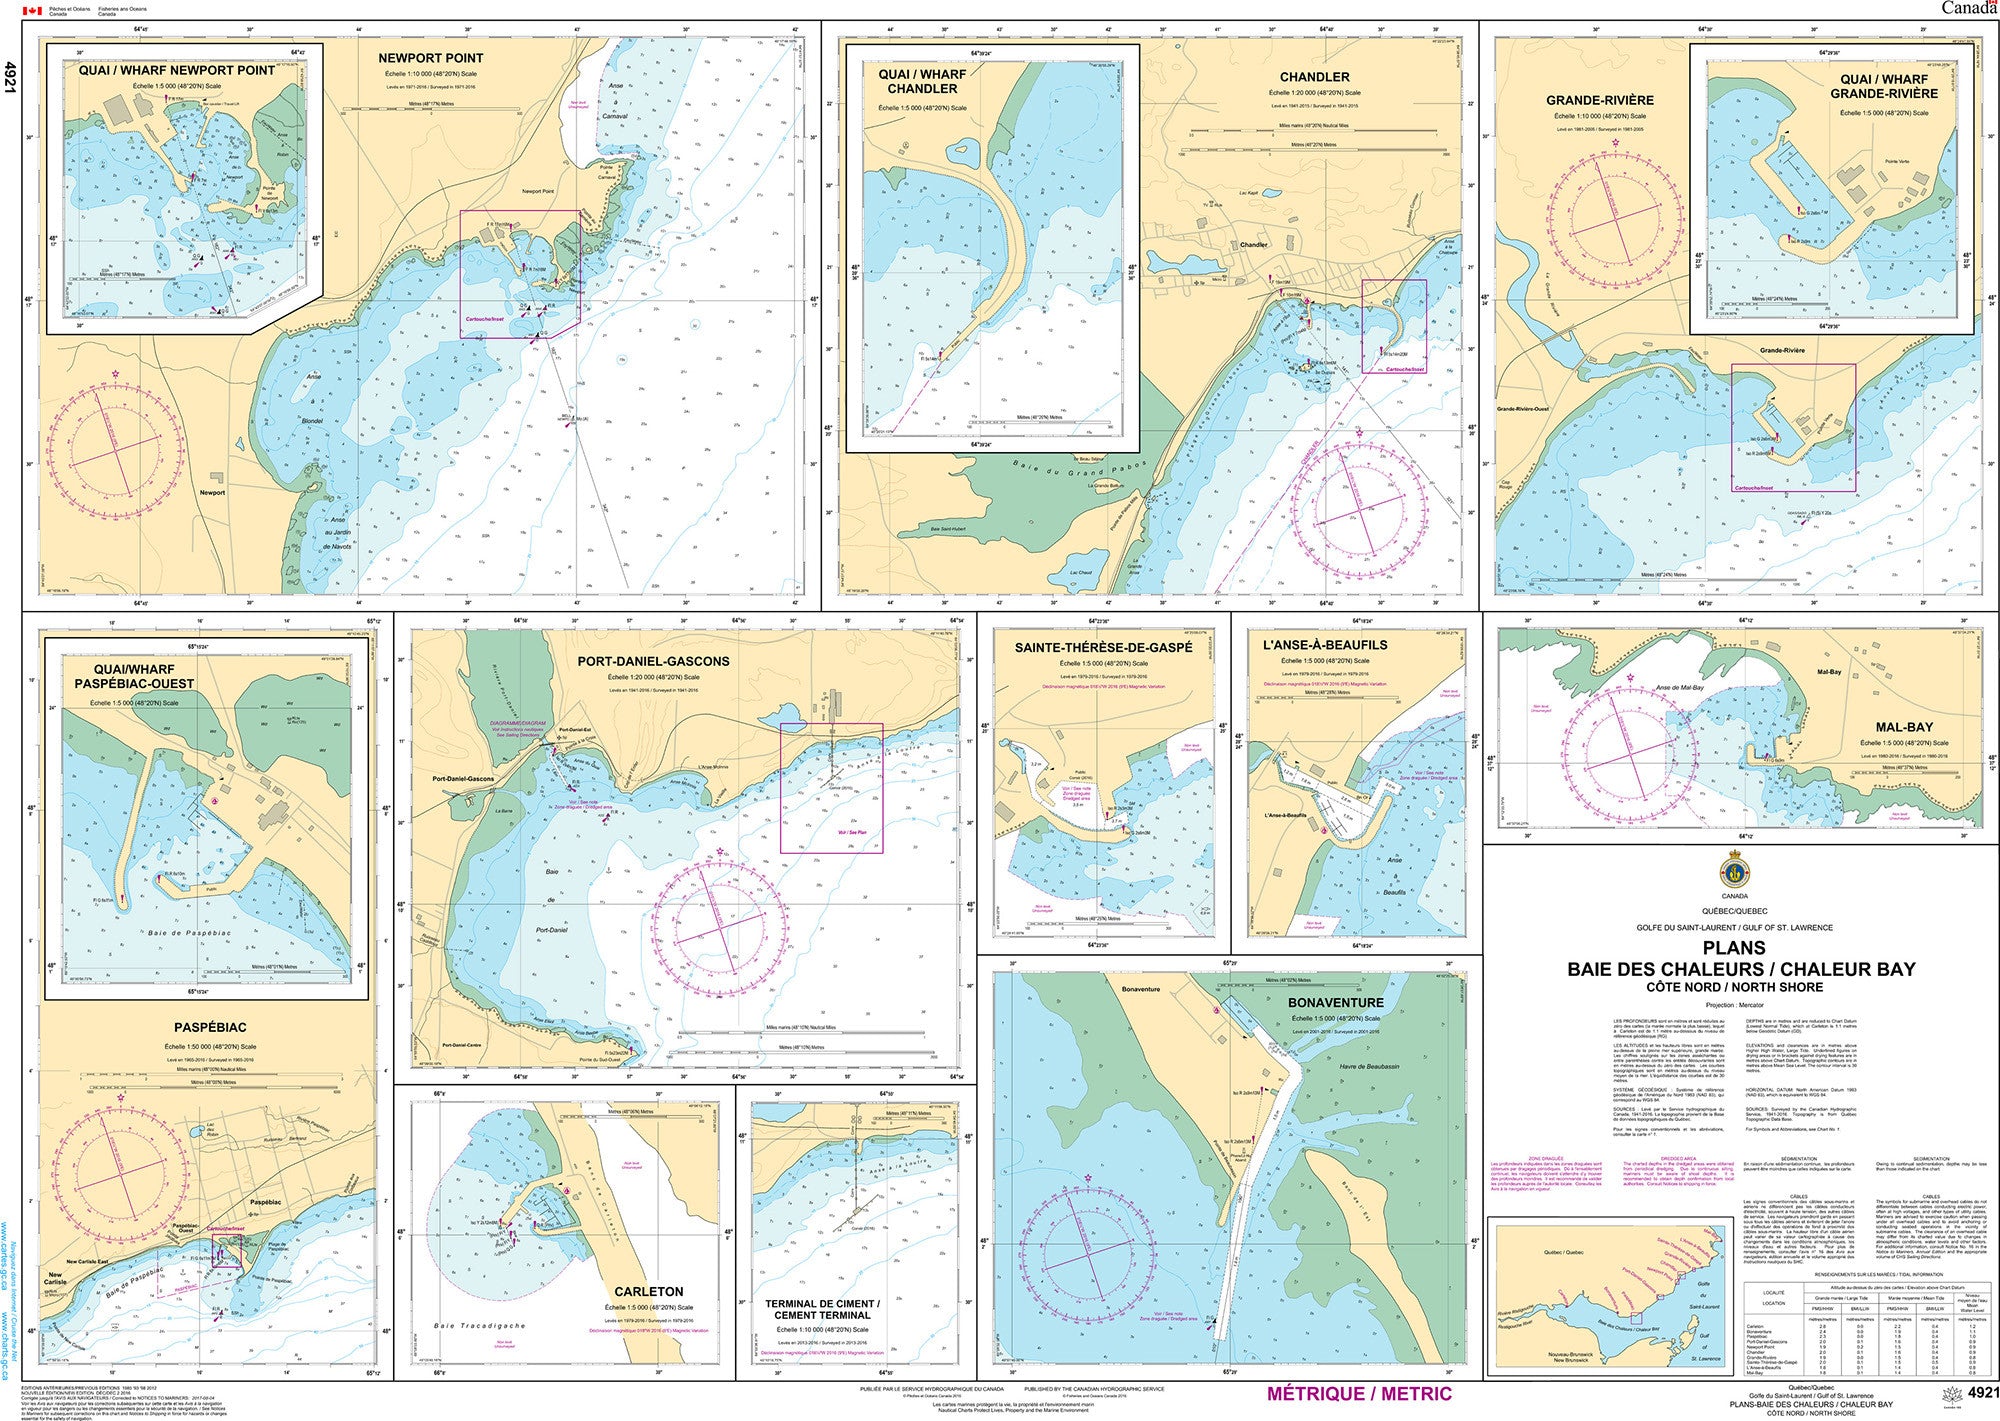 Canadian Hydrographic Service Nautical Chart CHS4921: Plans, Baie des Chaleurs/Chaleur Bay (côte nord/North Shore)